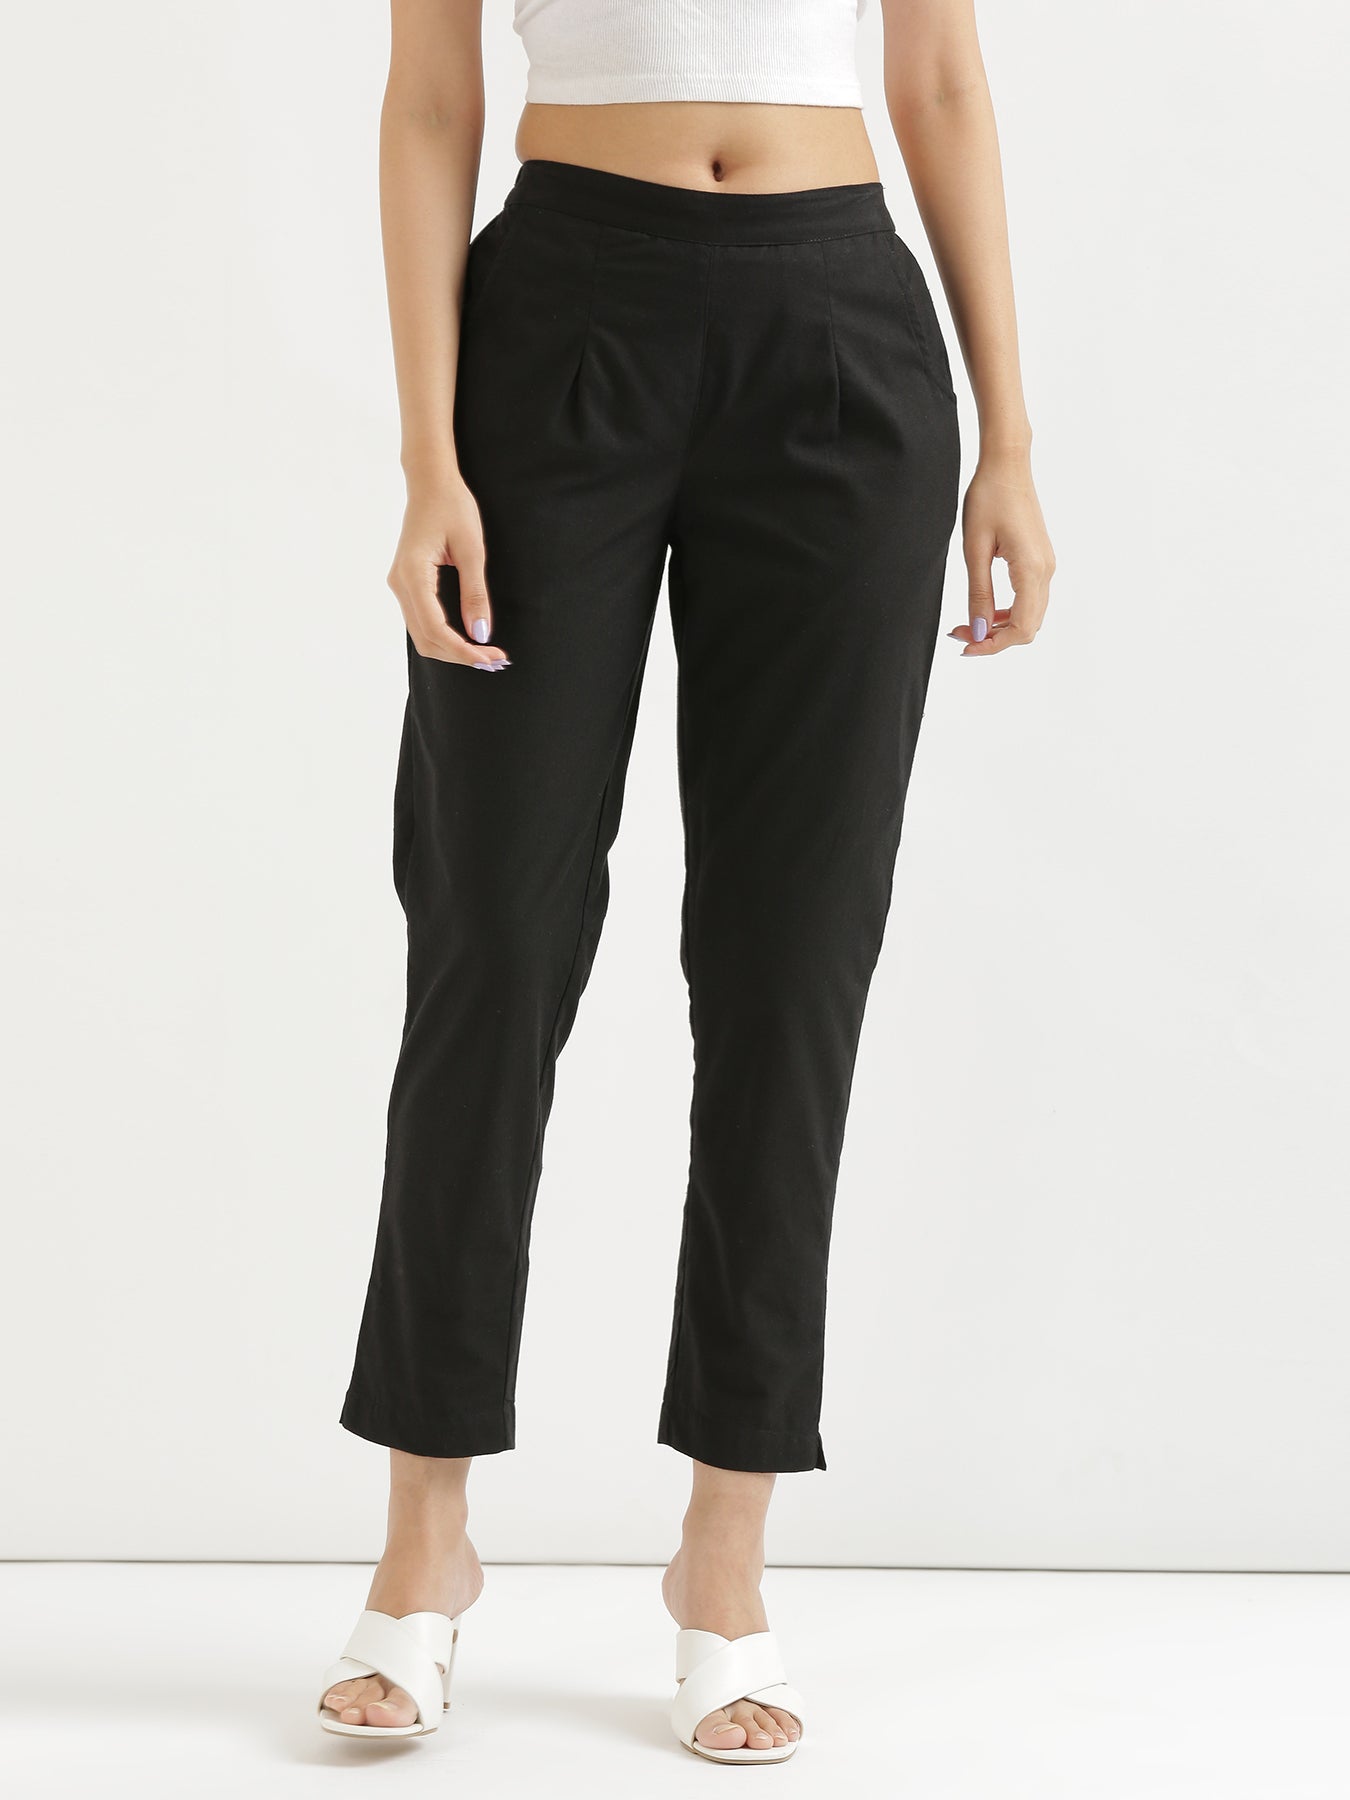 Vans trousers women's black color | buy on PRM